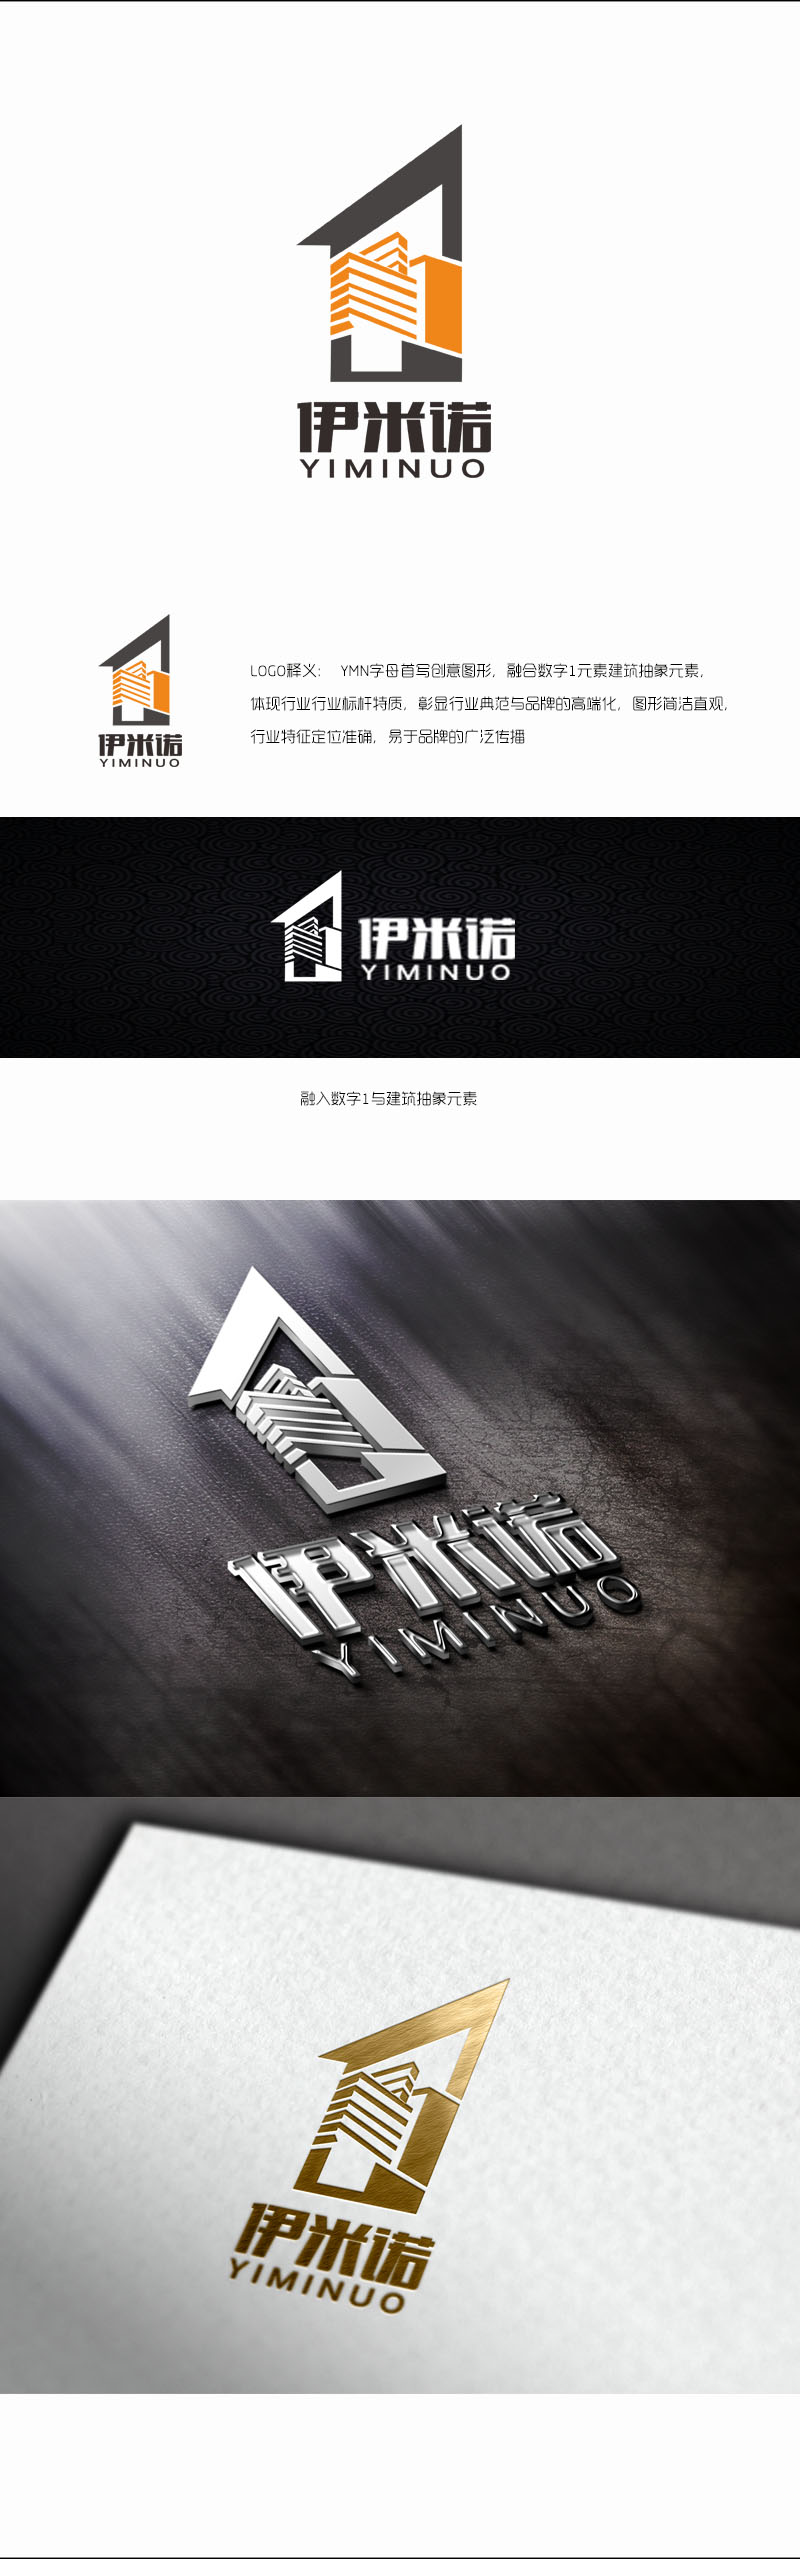 郭庆忠的伊米诺铝合金门窗logo设计